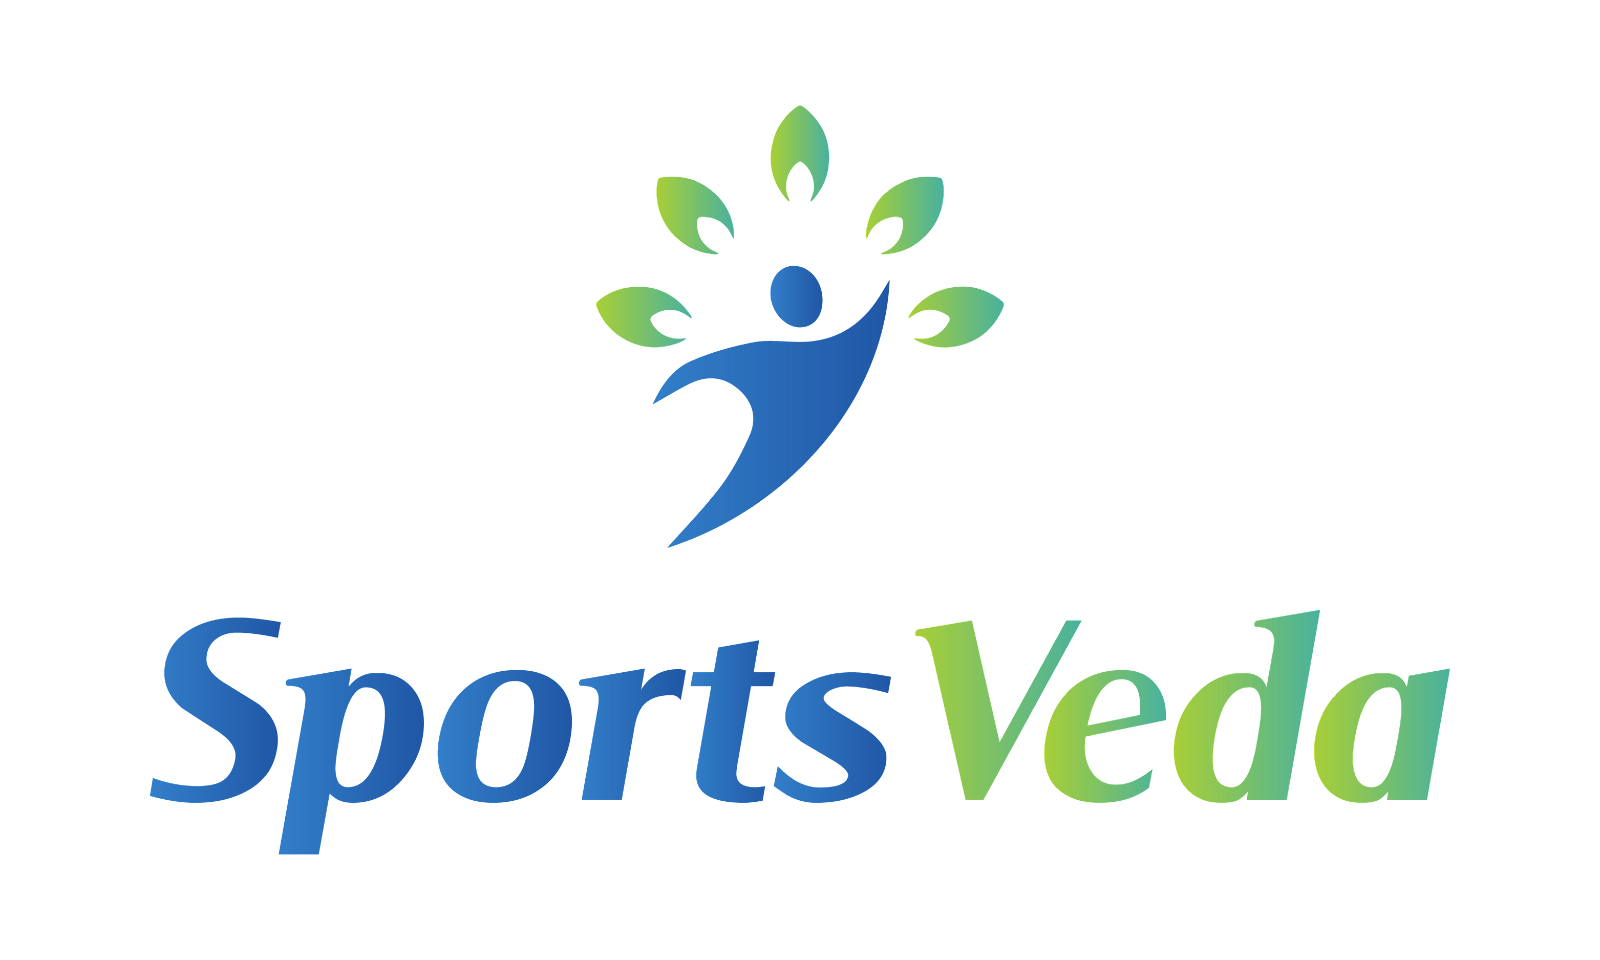 SportsVeda.com - Creative brandable domain for sale